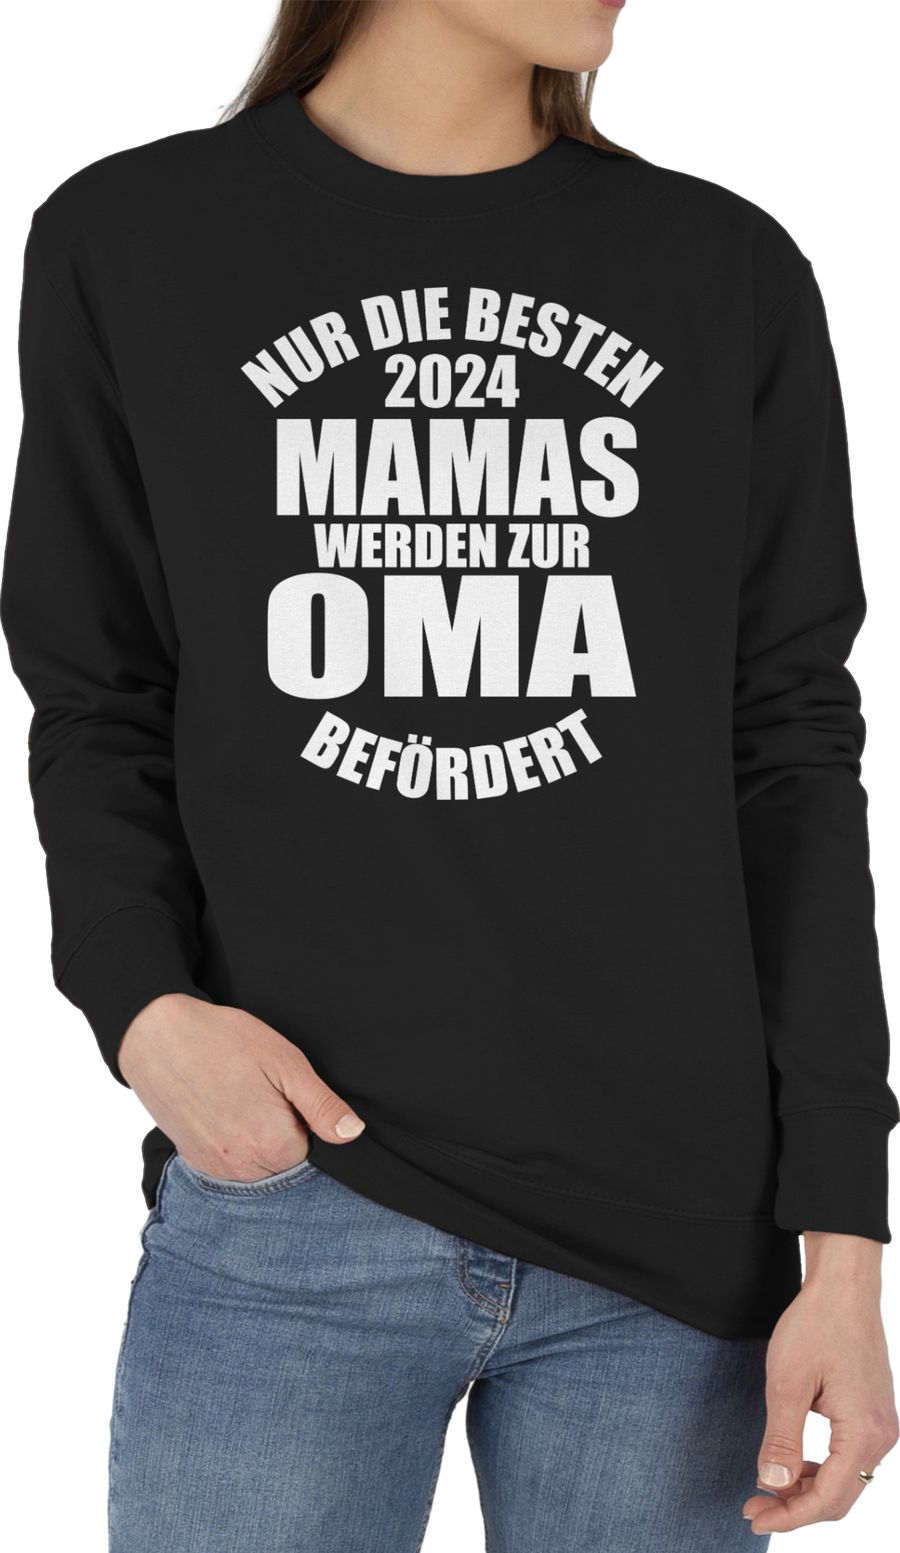 Nur die besten Mamas werden zur Oma befördert 2024 - weiß